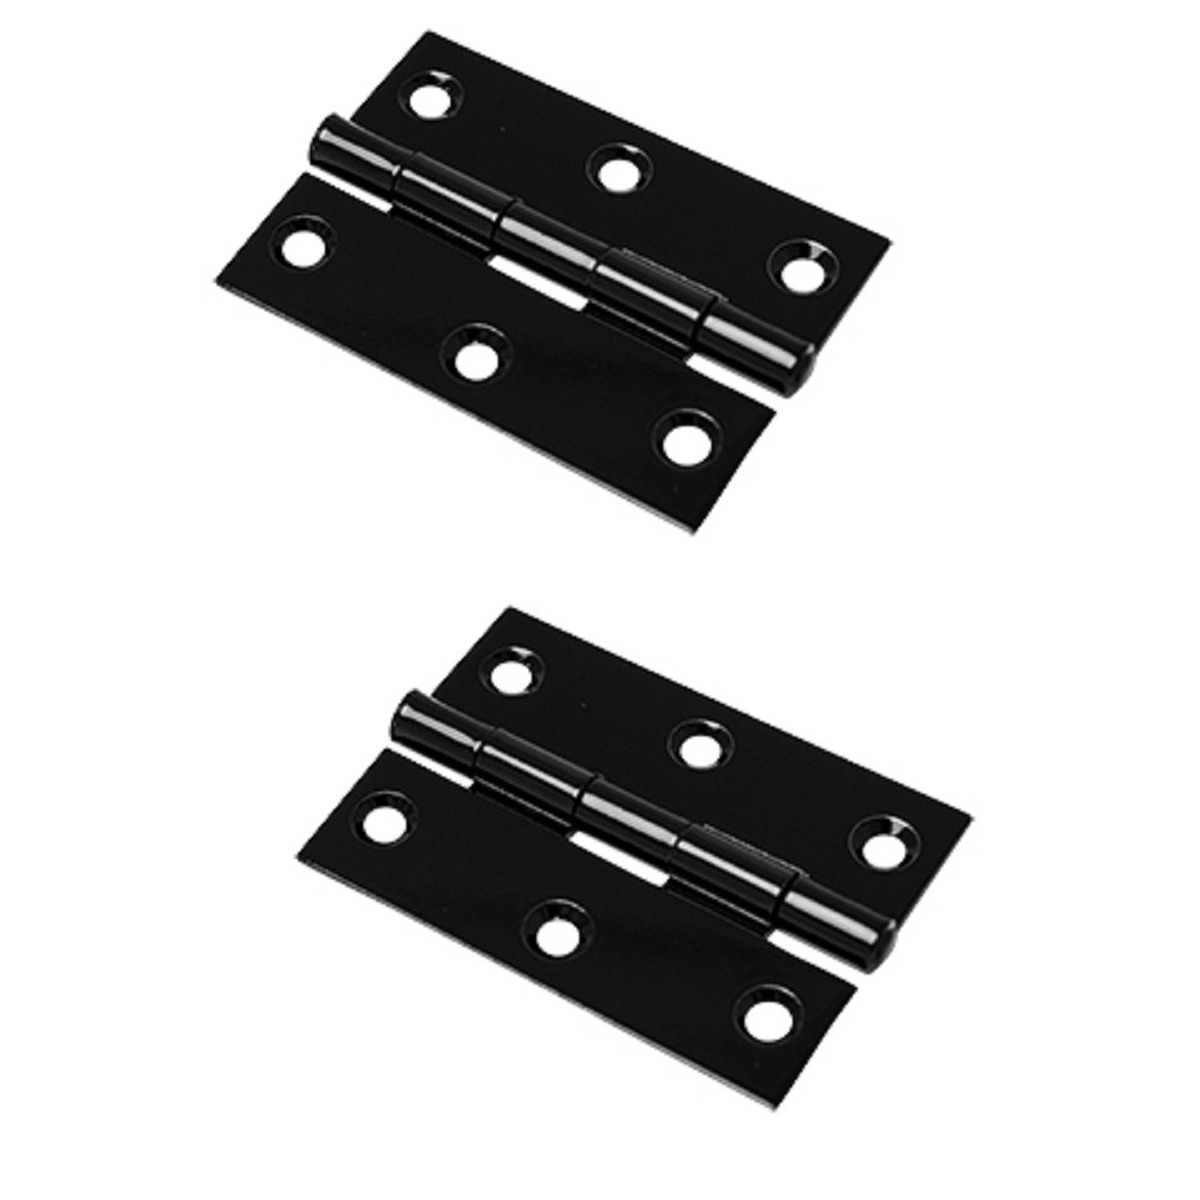 6x stuks scharnier-bouwscharnier-meubelscharnieren zwart ijzer met rechte hoeken 9 x 9 x 2 cm